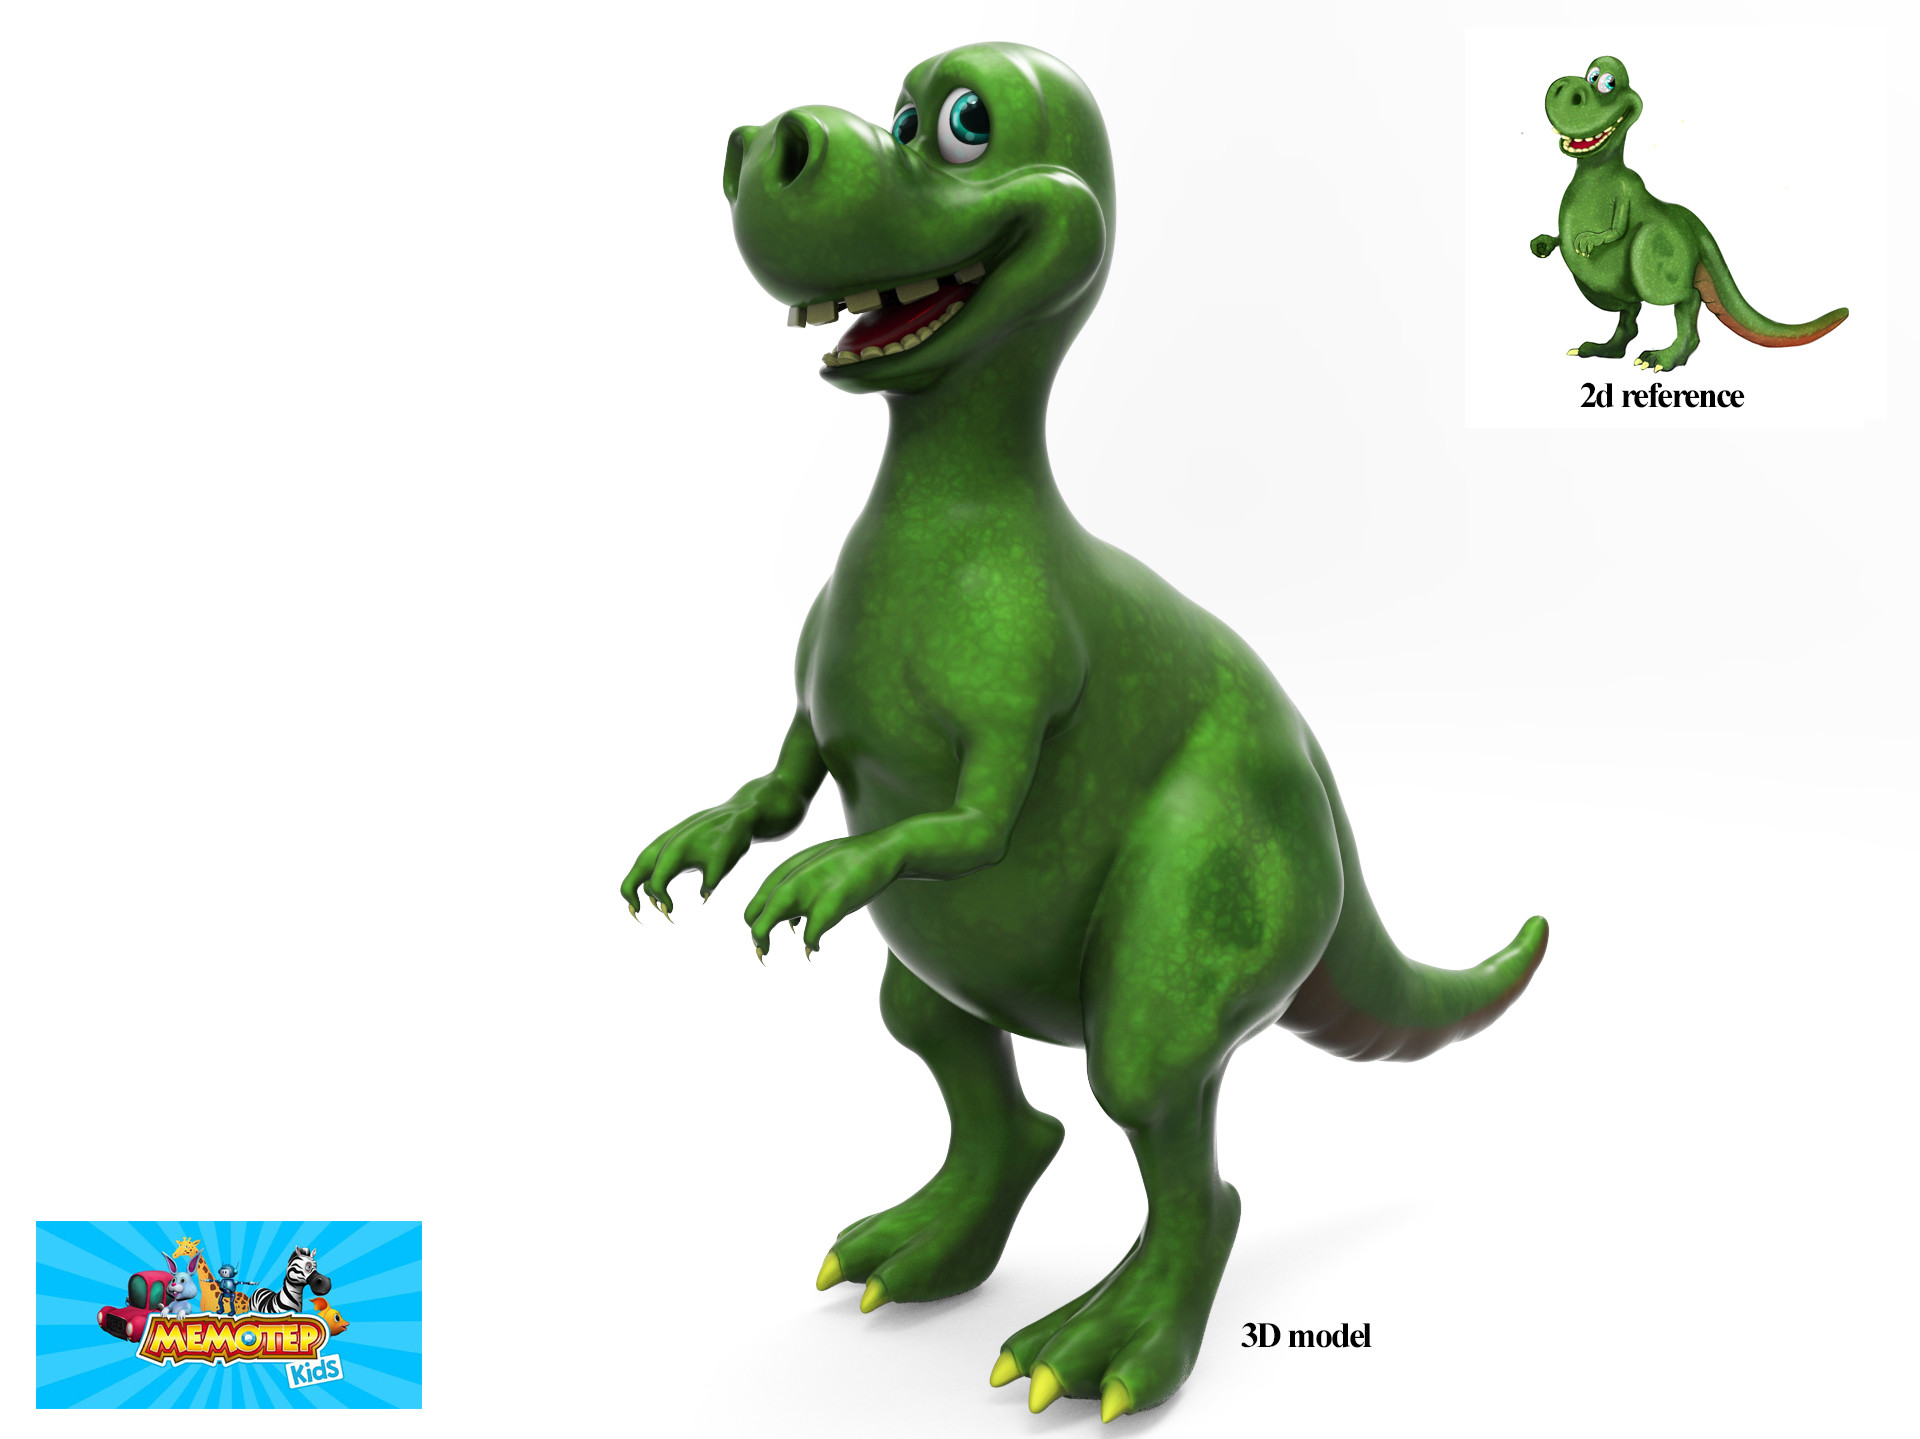 ArtStation - 3D cartoon Dinosaur